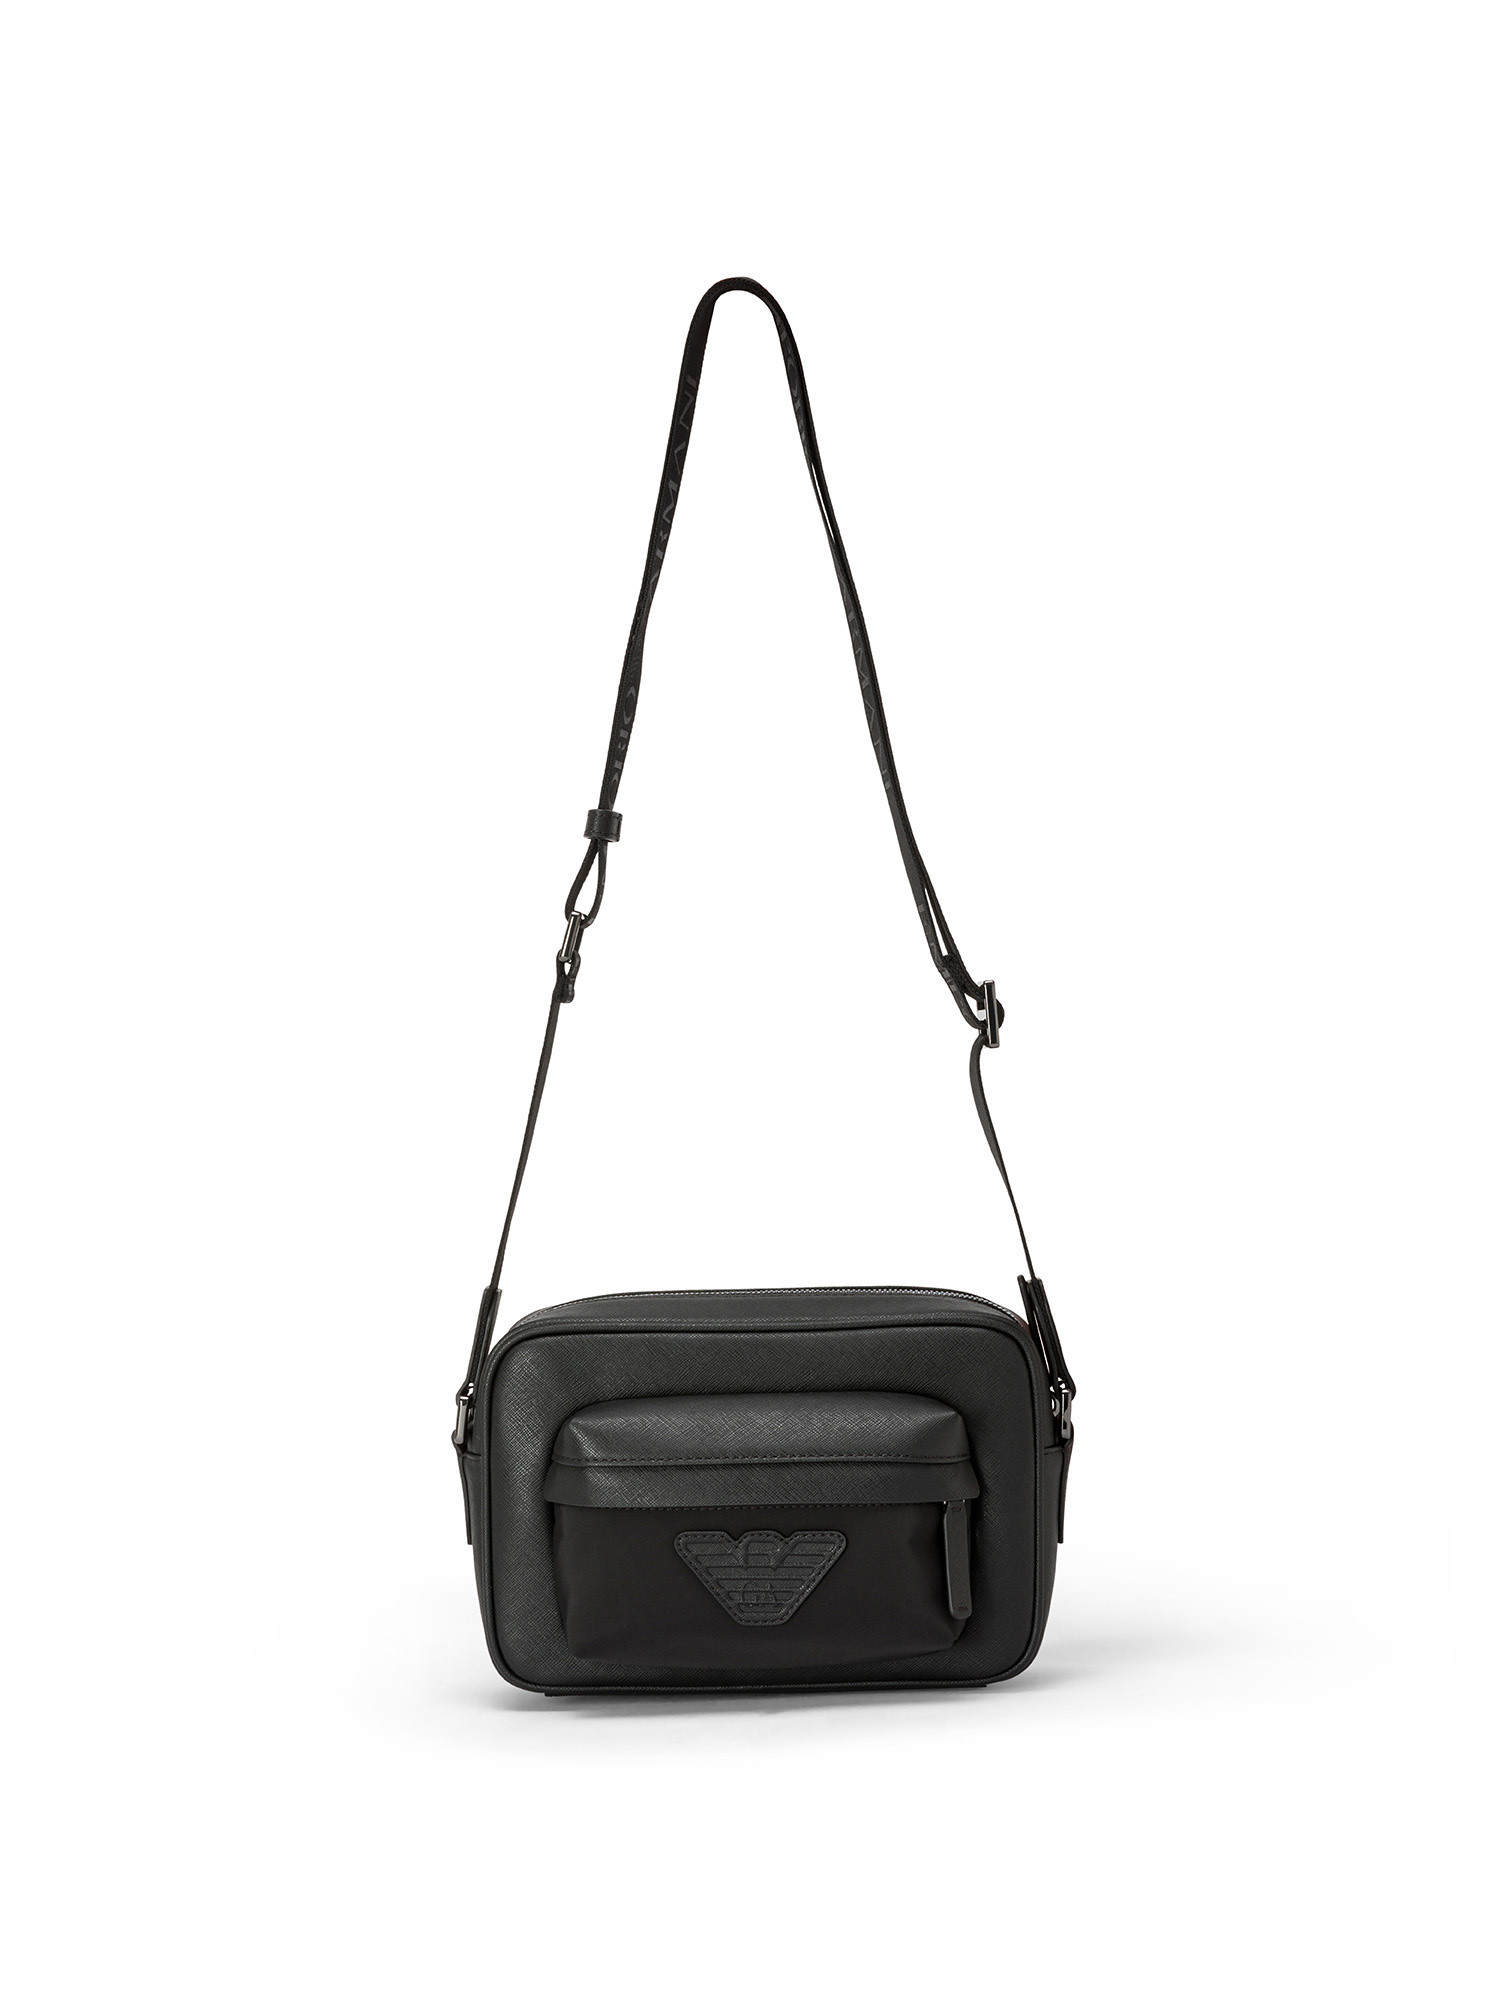 Emporio Armani - Leather shoulder bag with logo, Black, large image number 0